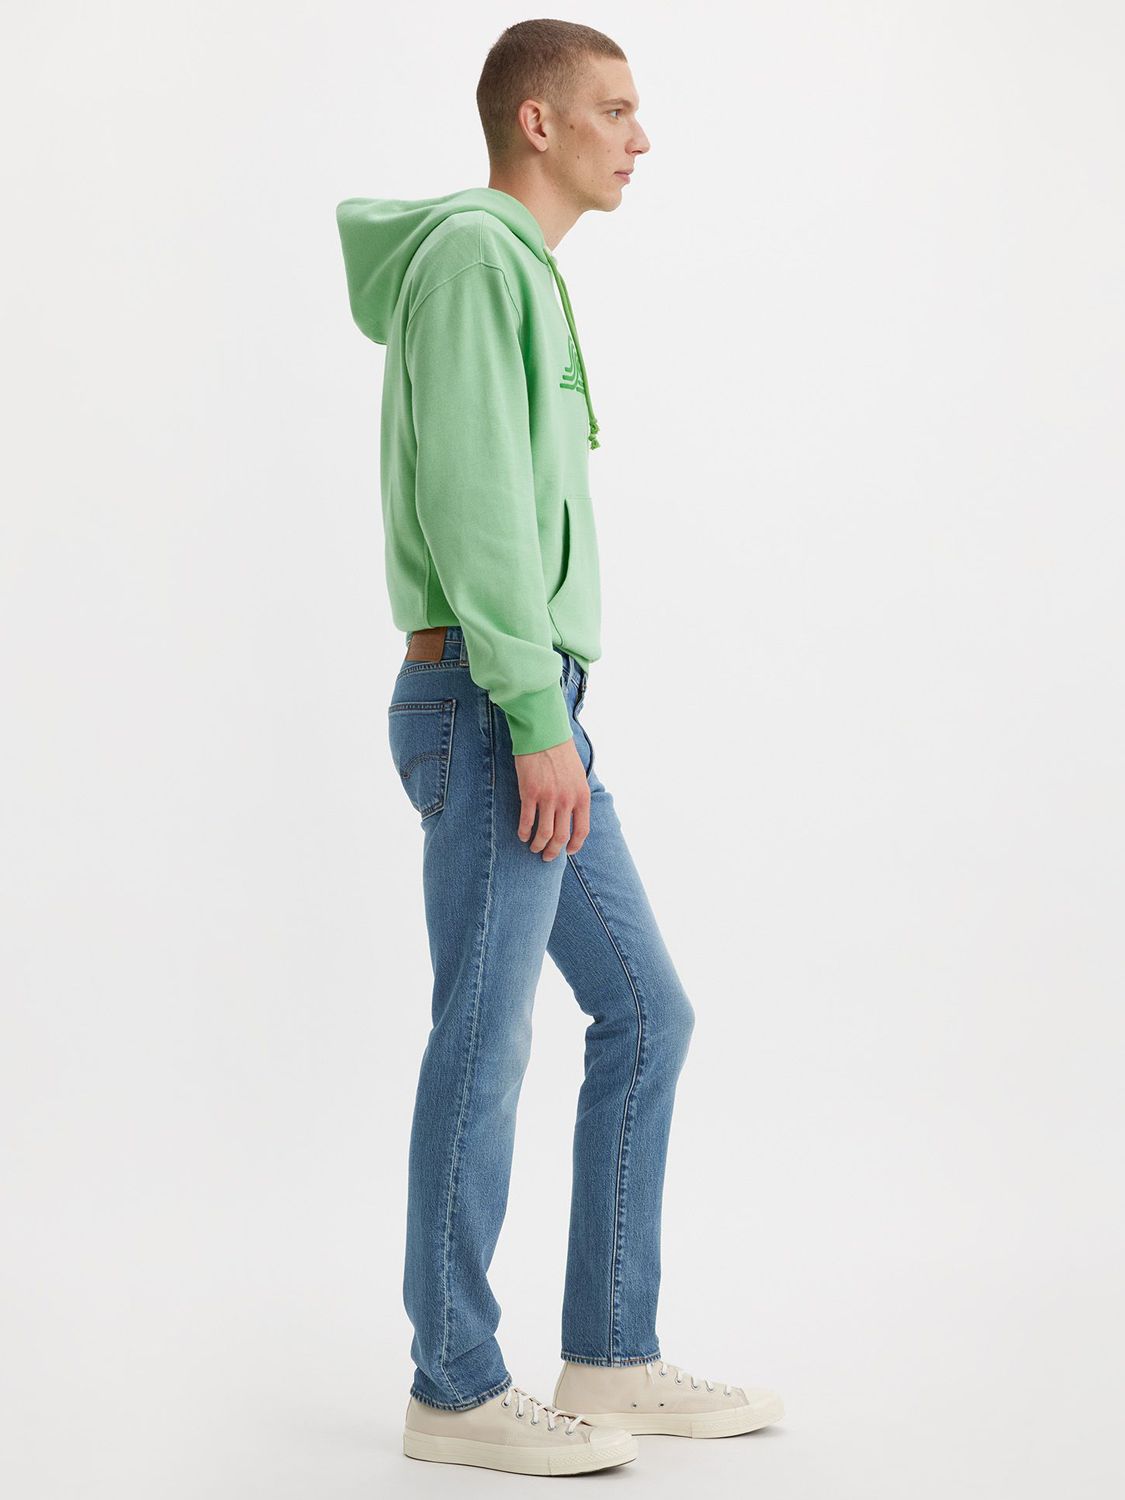 Levi's 511 Slim Fit Jeans, Blue, 32R